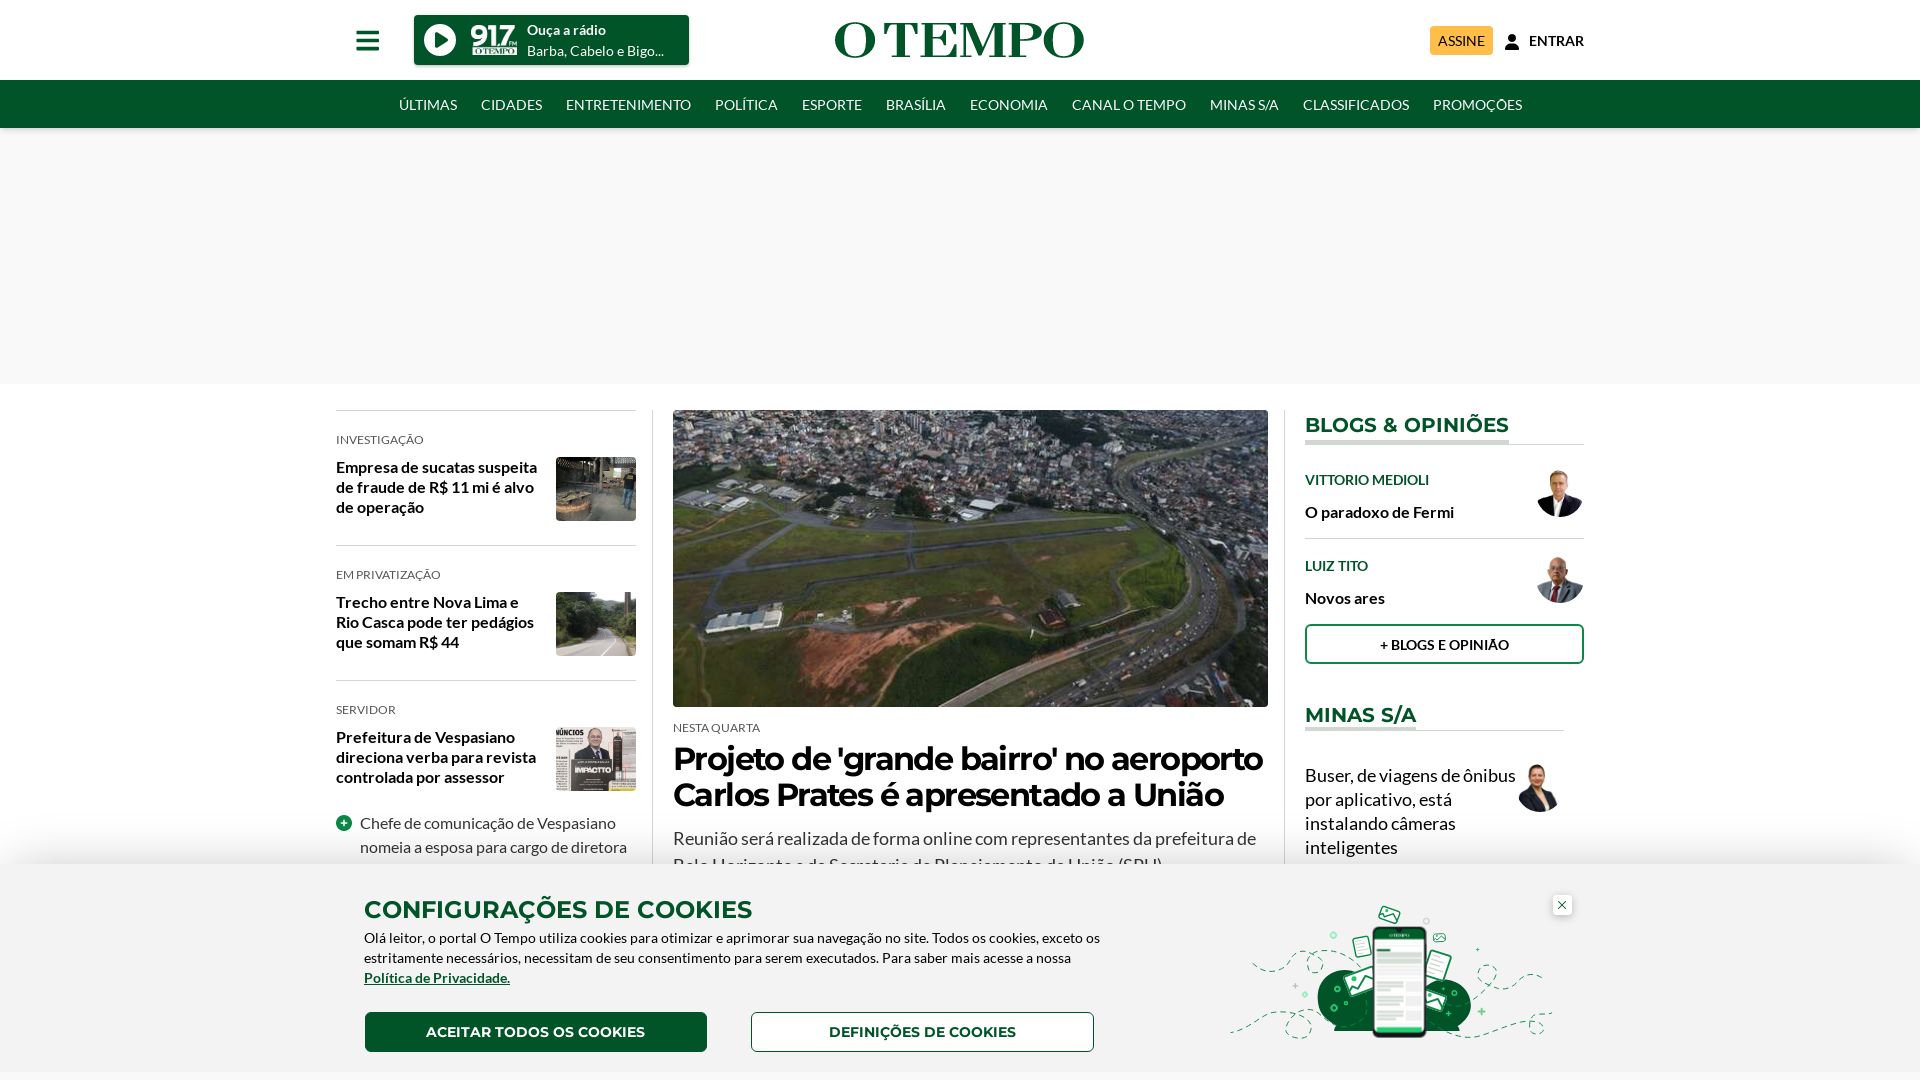 Webseitenstatus otempo.com.br ist   ONLINE